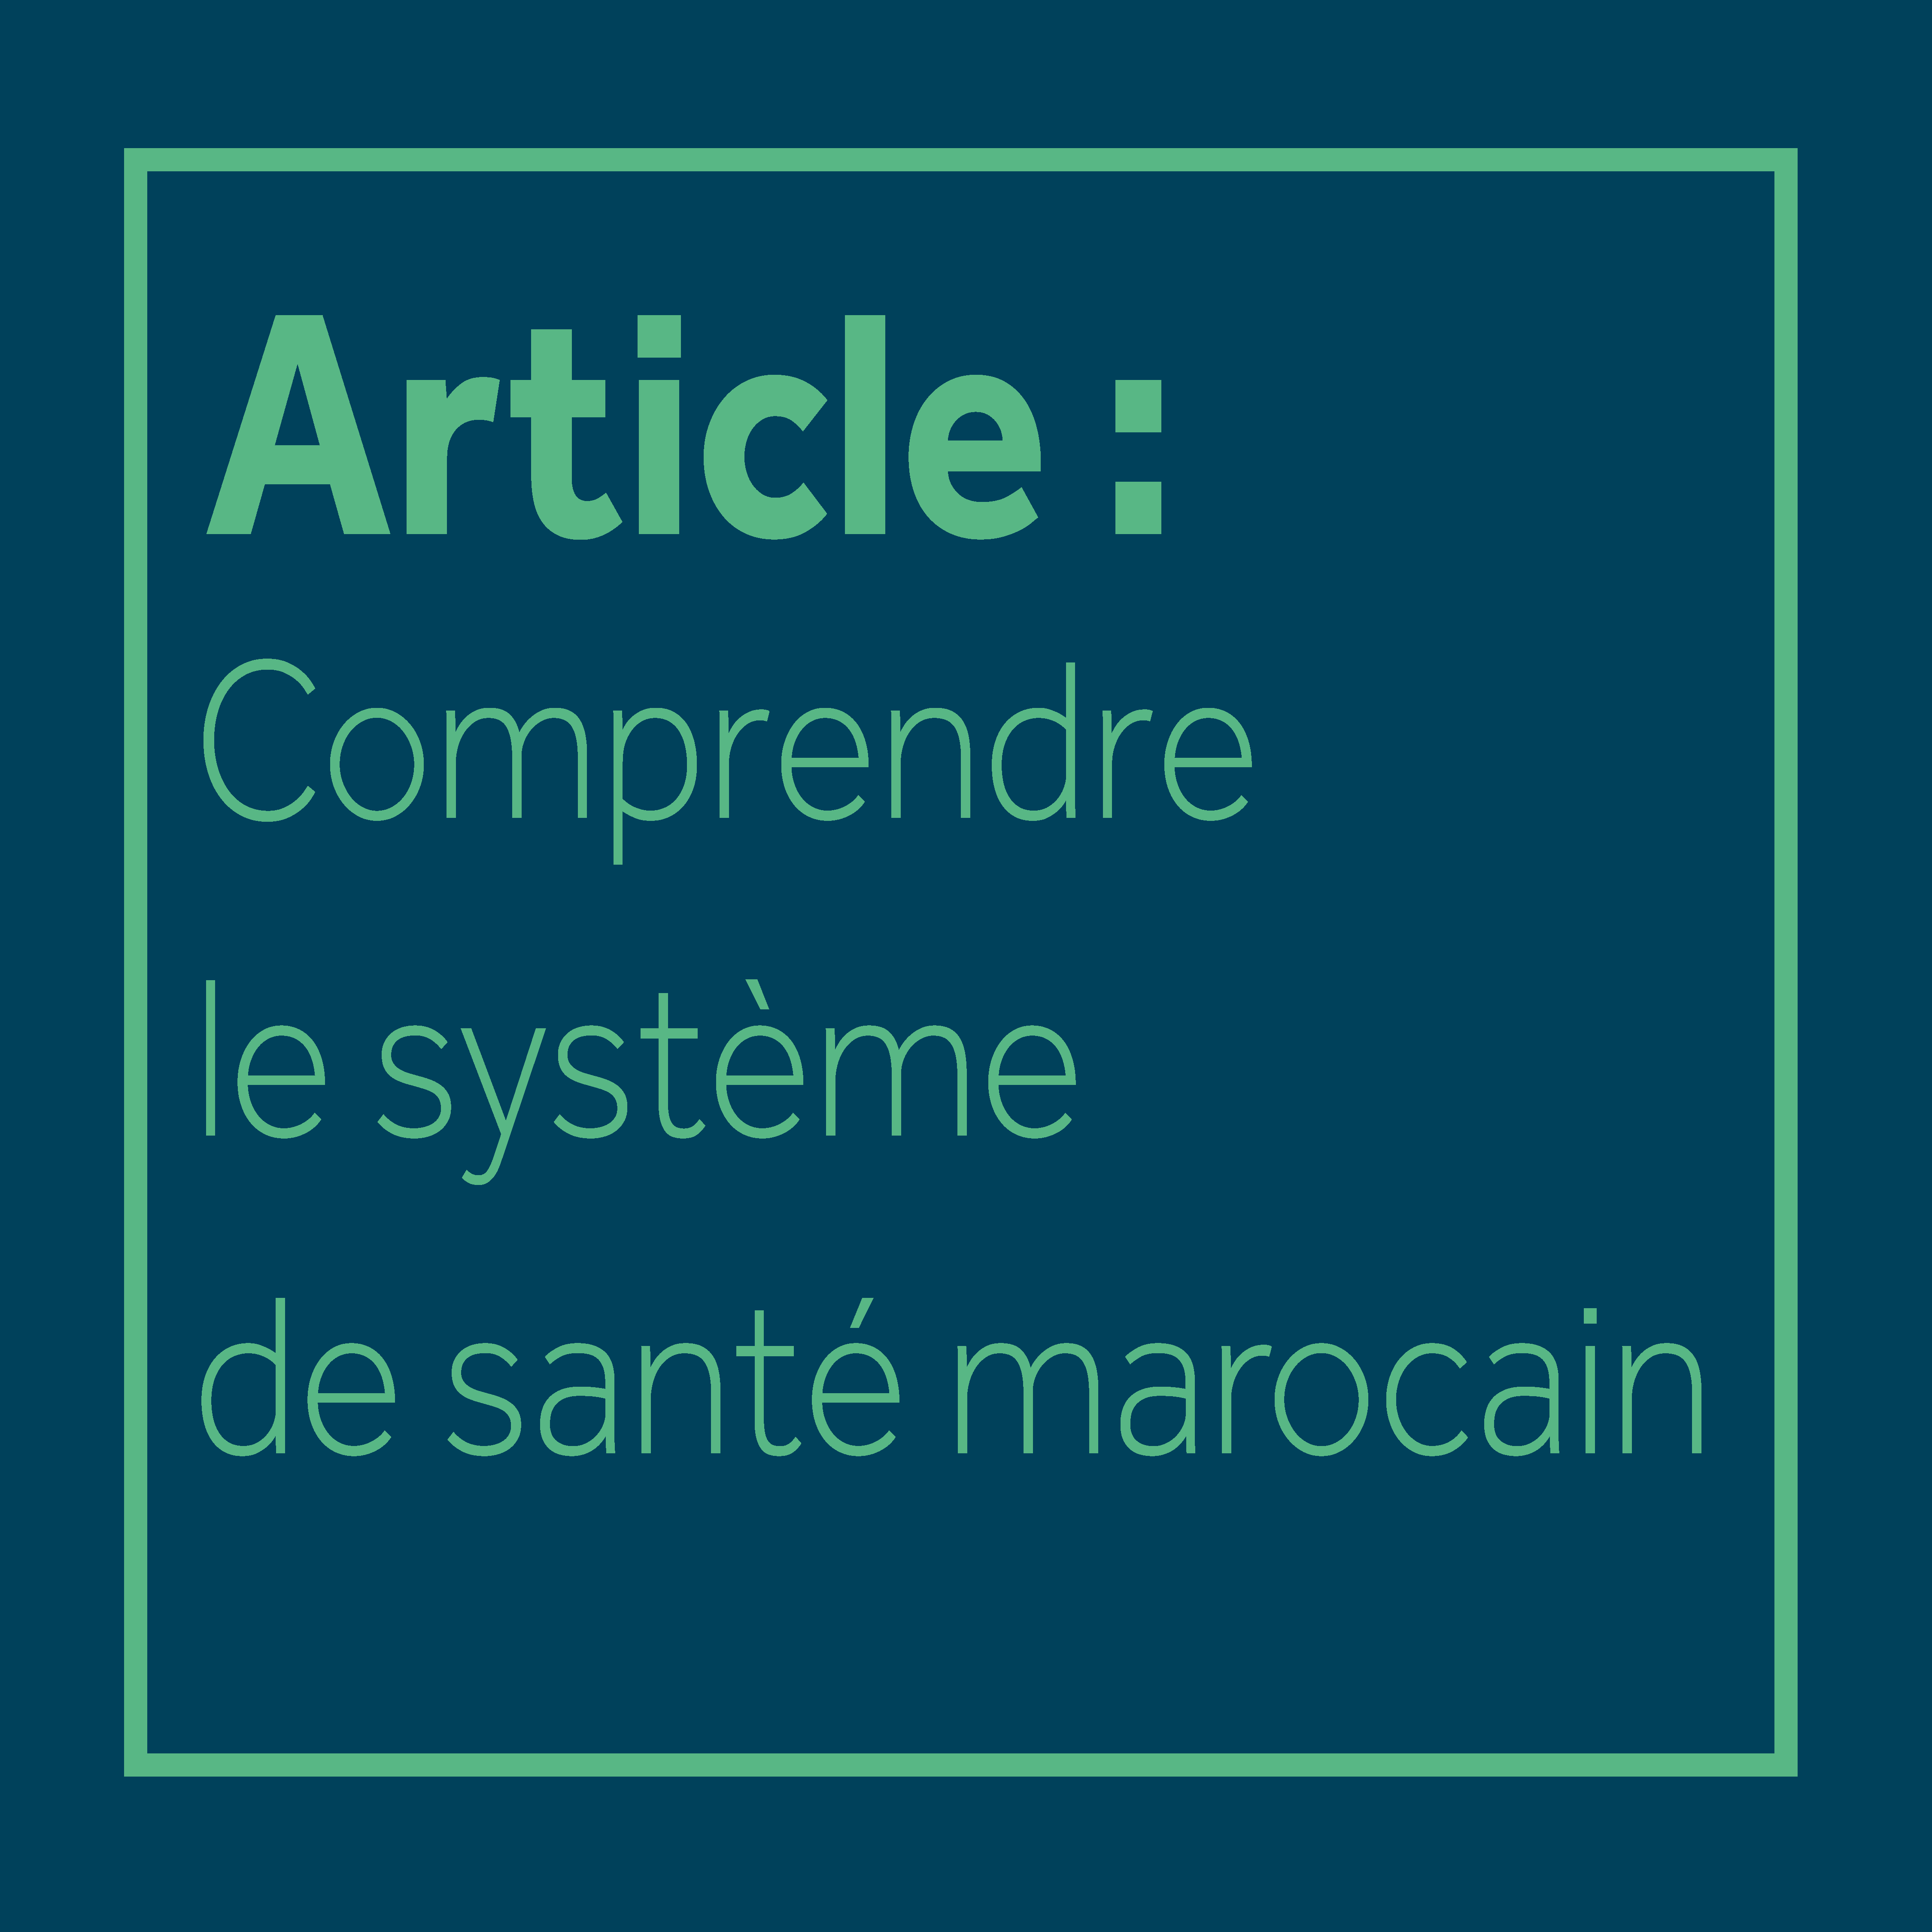 Article : Comprendre le système de santé marocain